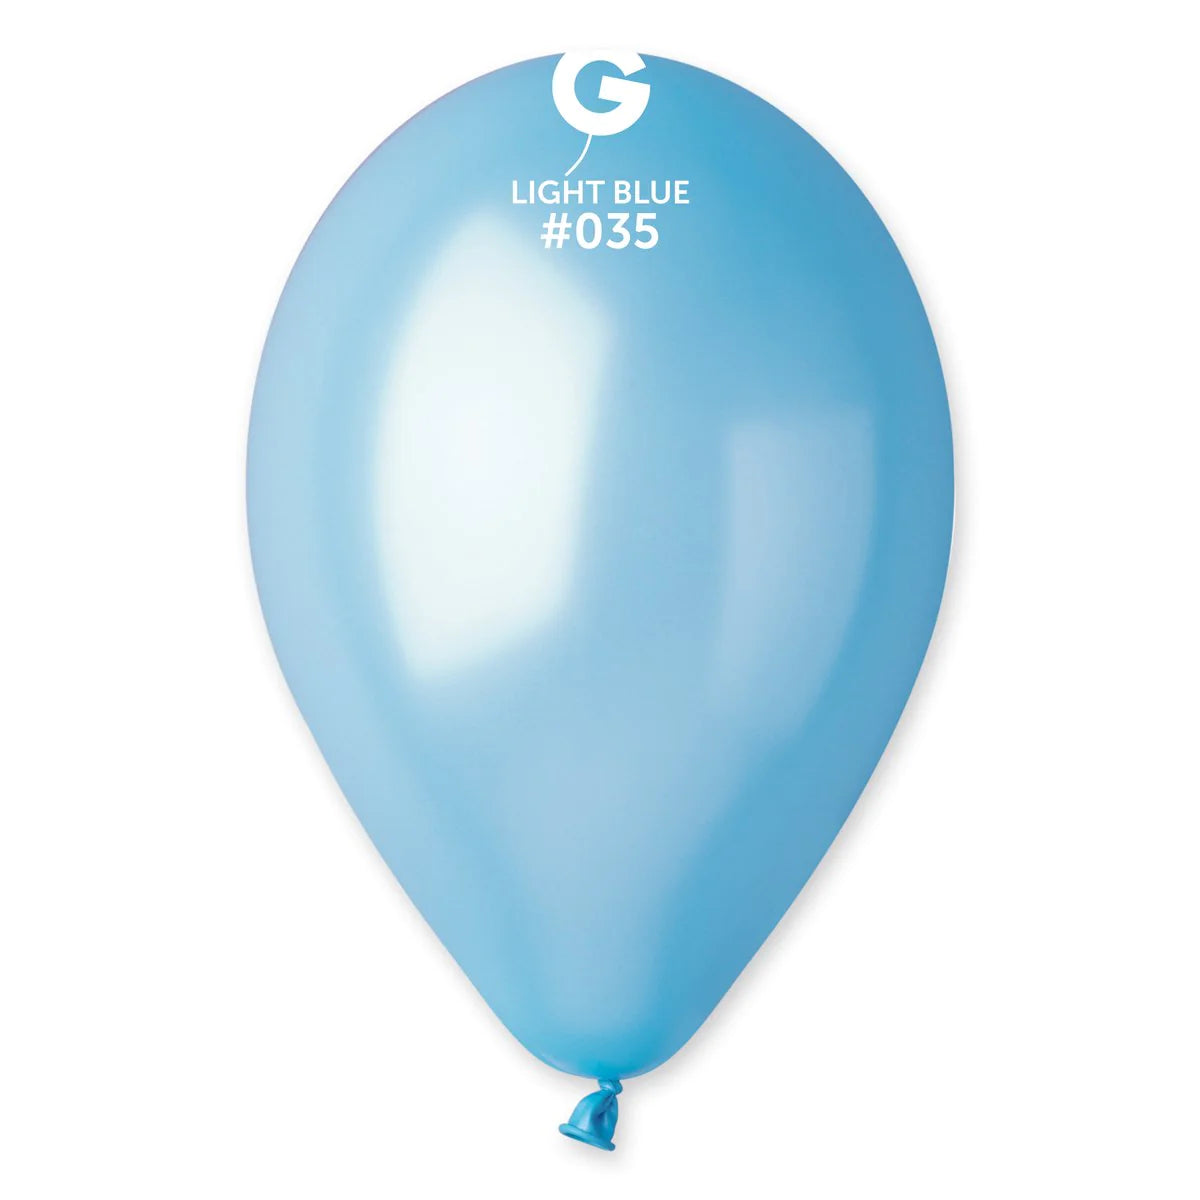 Metallic Balloon Light Blue #035 SIZE 5" 12" 19" 31"